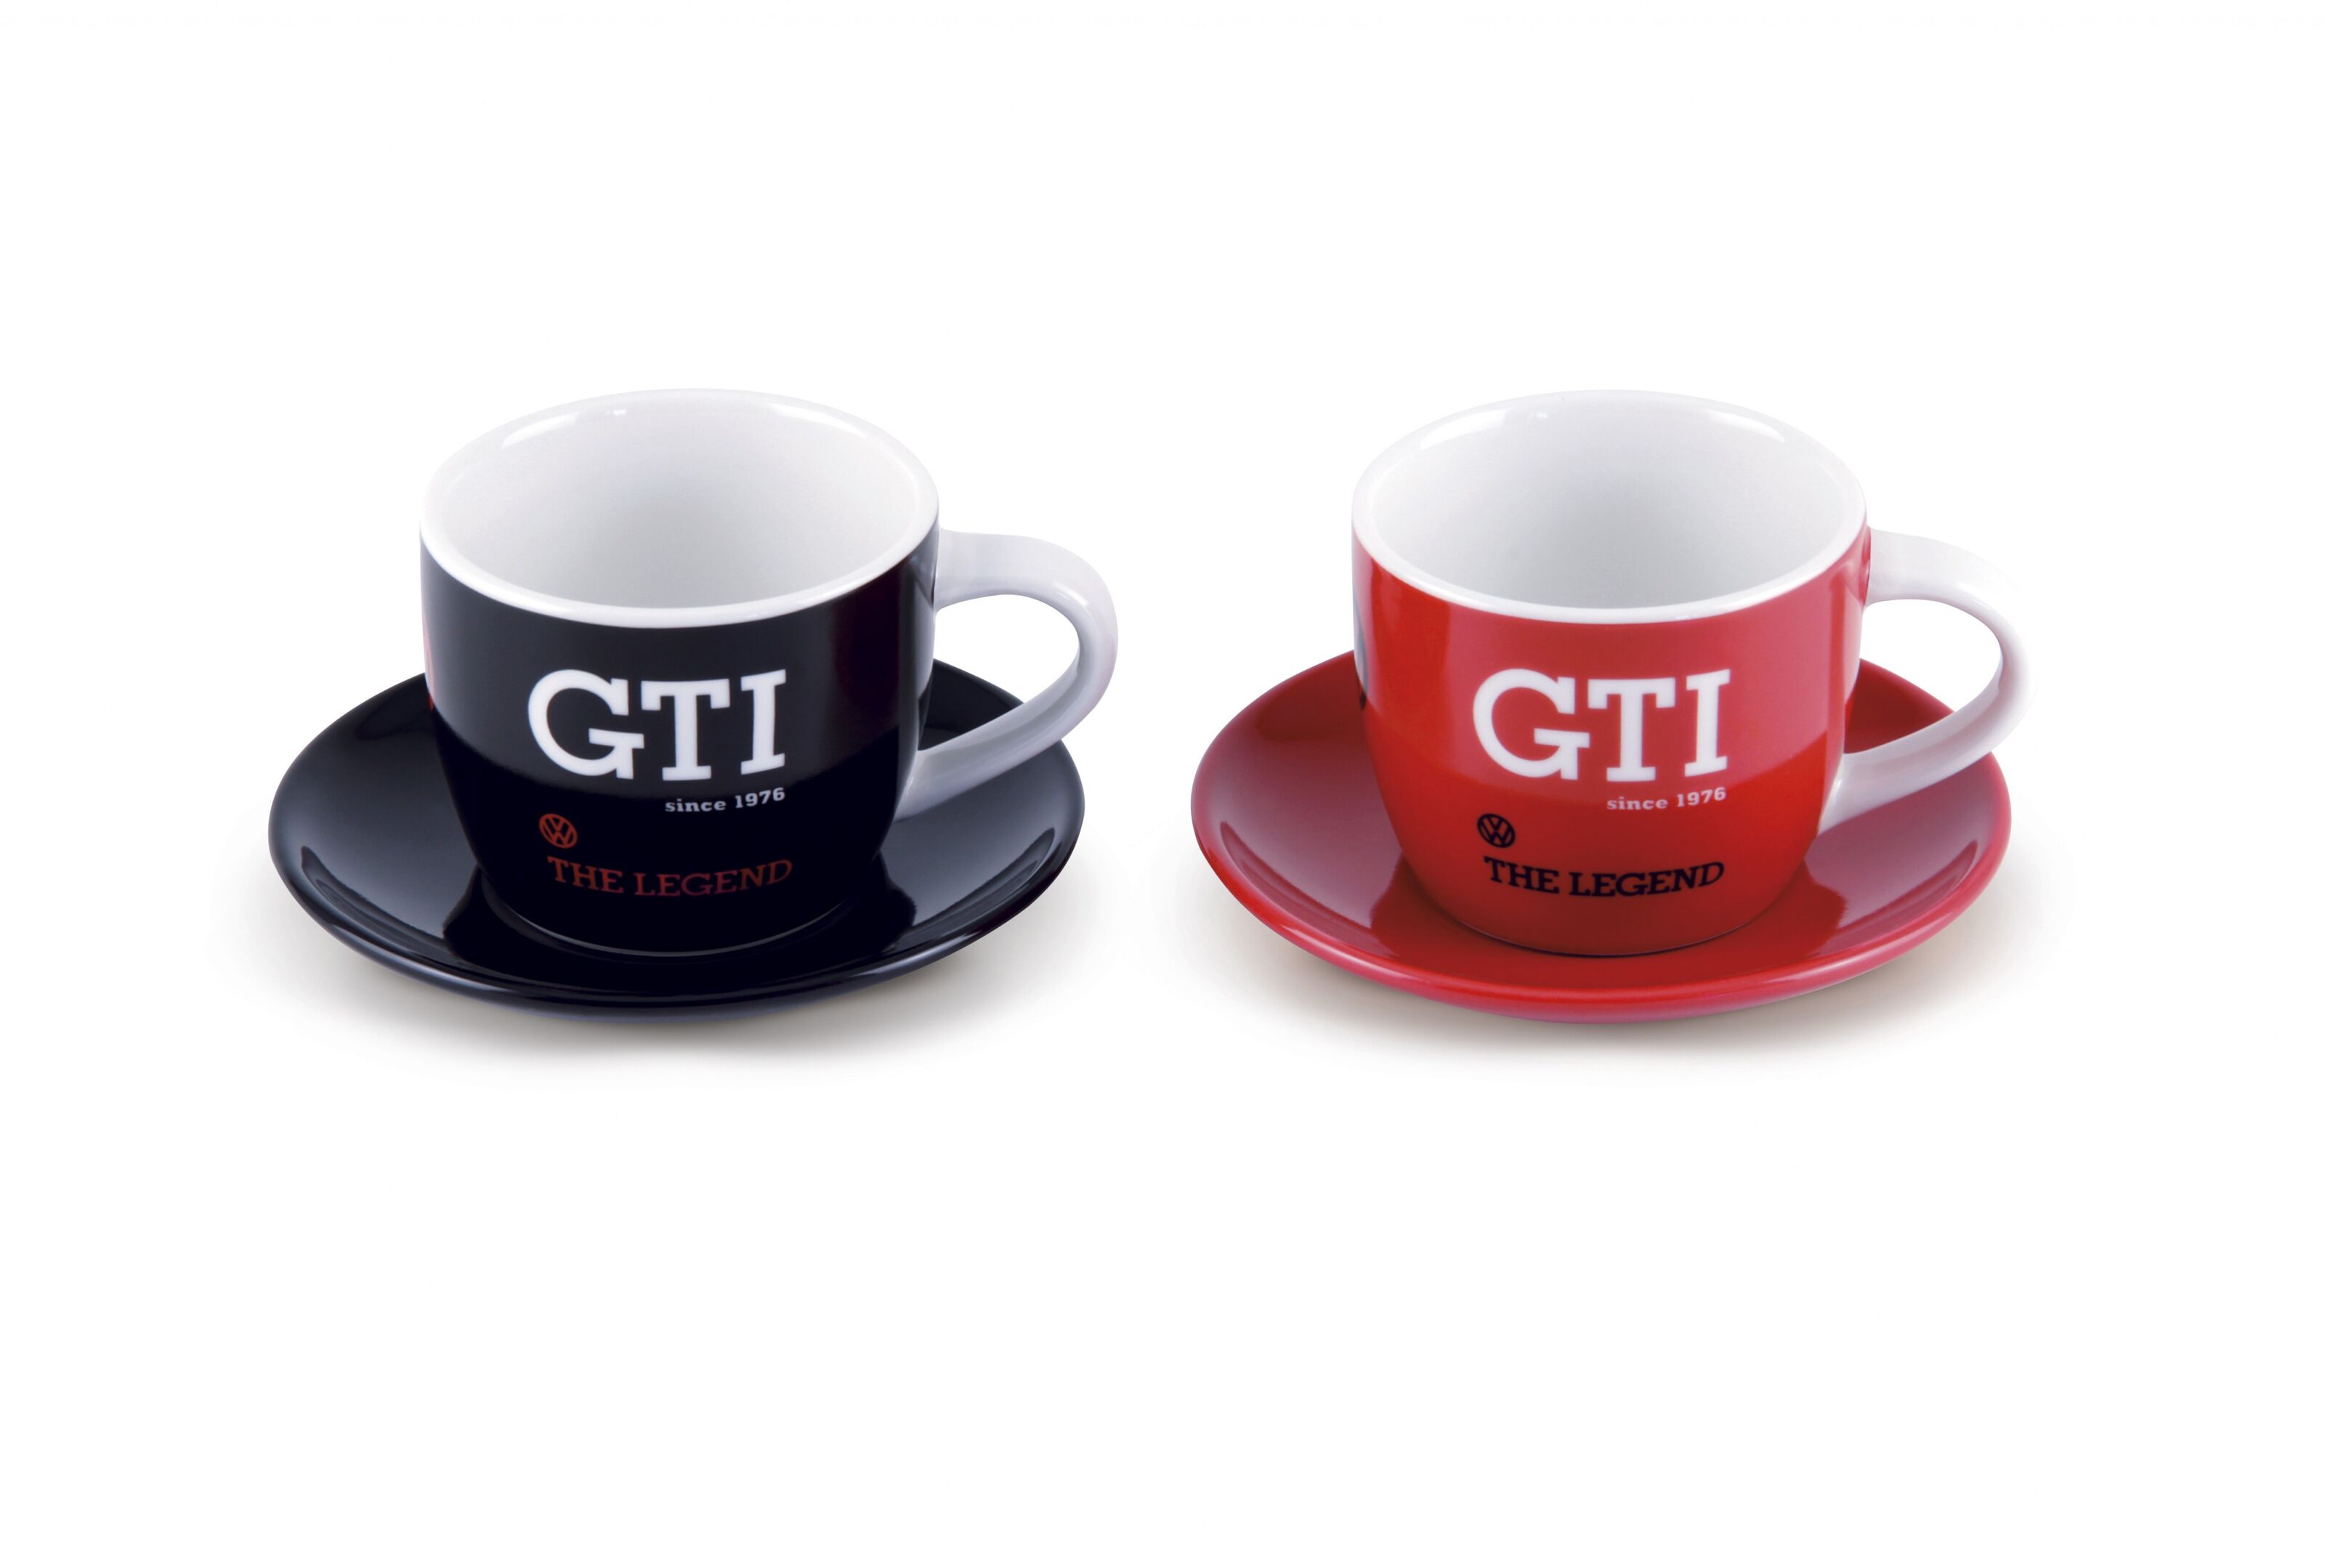 Kaufen Sie VOLKSWAGEN VW GTI Service Espresso Kaffeetasse, 2 Stück, 100ml -  The Legend/rot & schwarz zu Großhandelspreisen